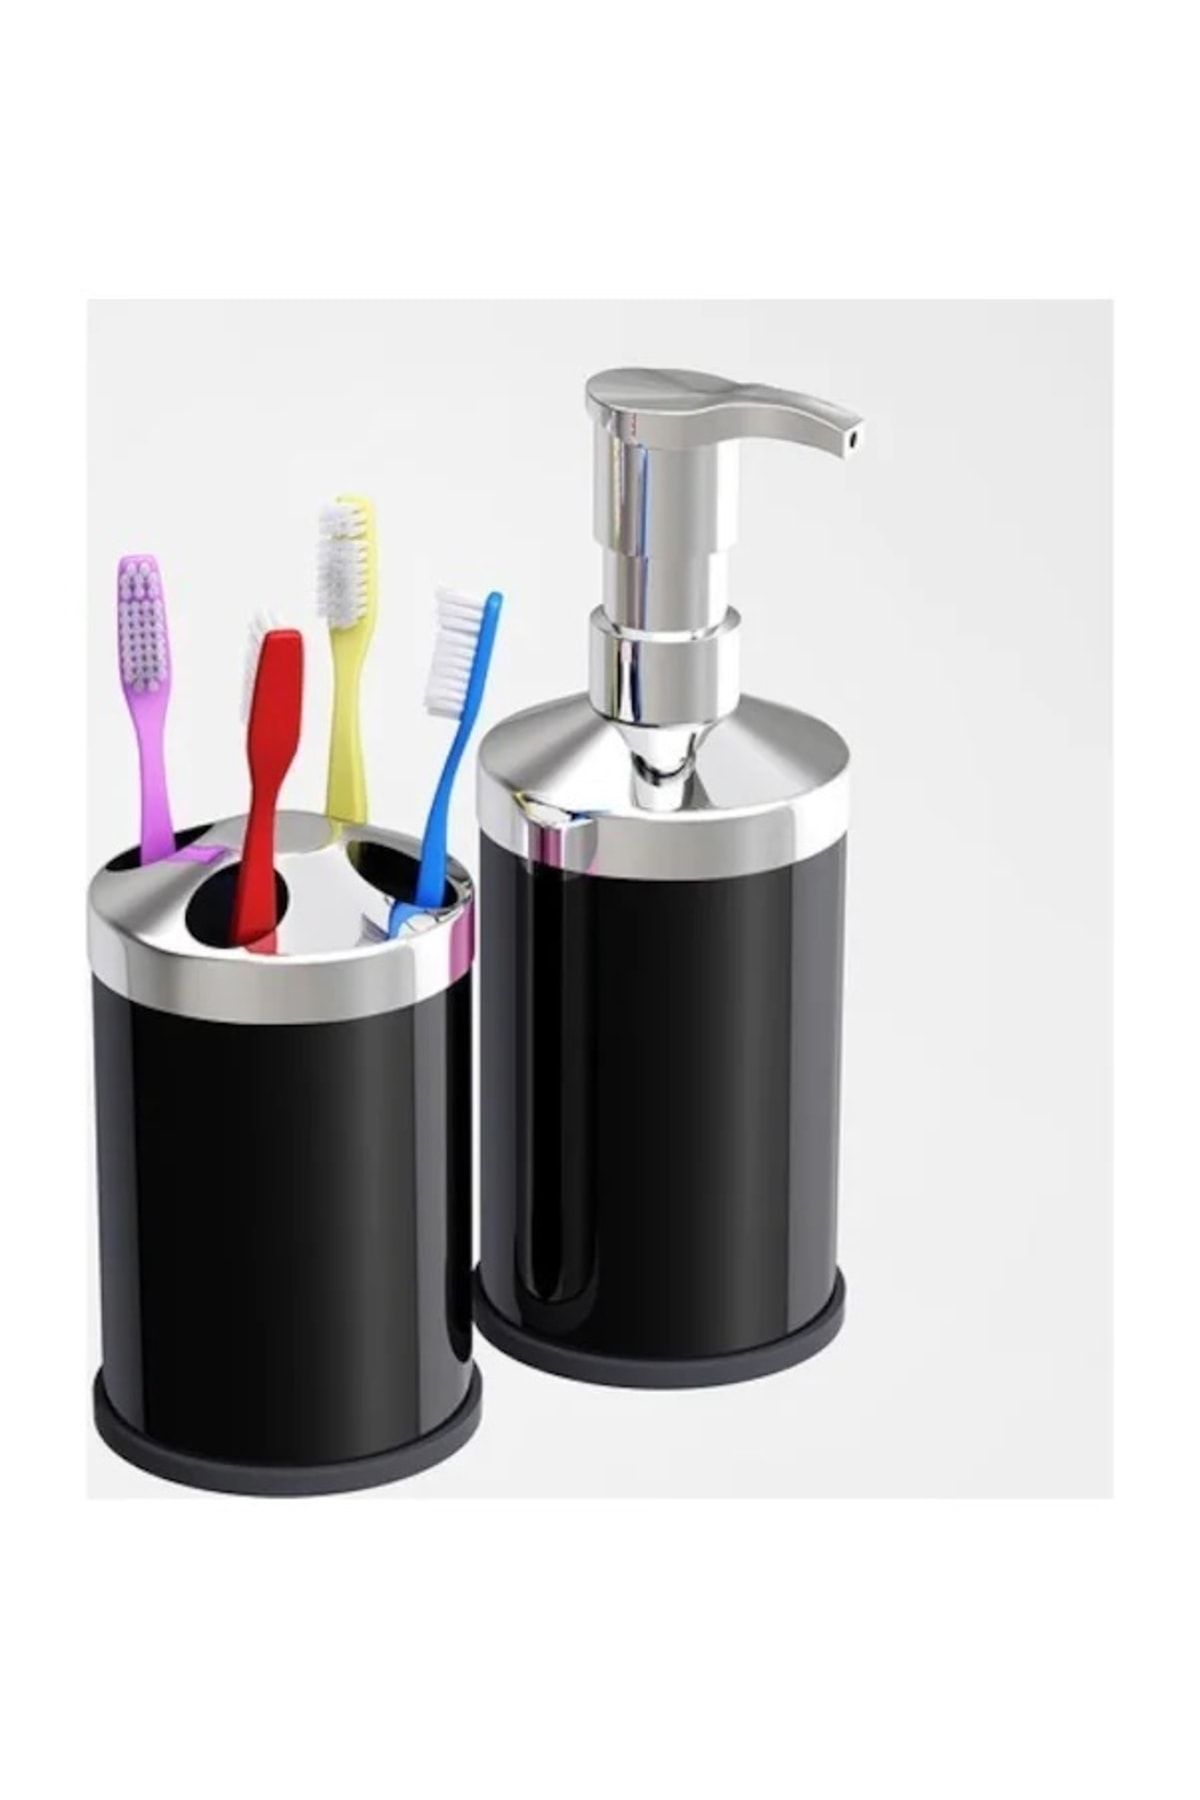 GörSeç Siyah Paslanmaz Banyo Lavabo Tezgah Üstü Sıvı Sabunluk Diş Fırçalık Seti Ikili Banyo Seti Çeyiz